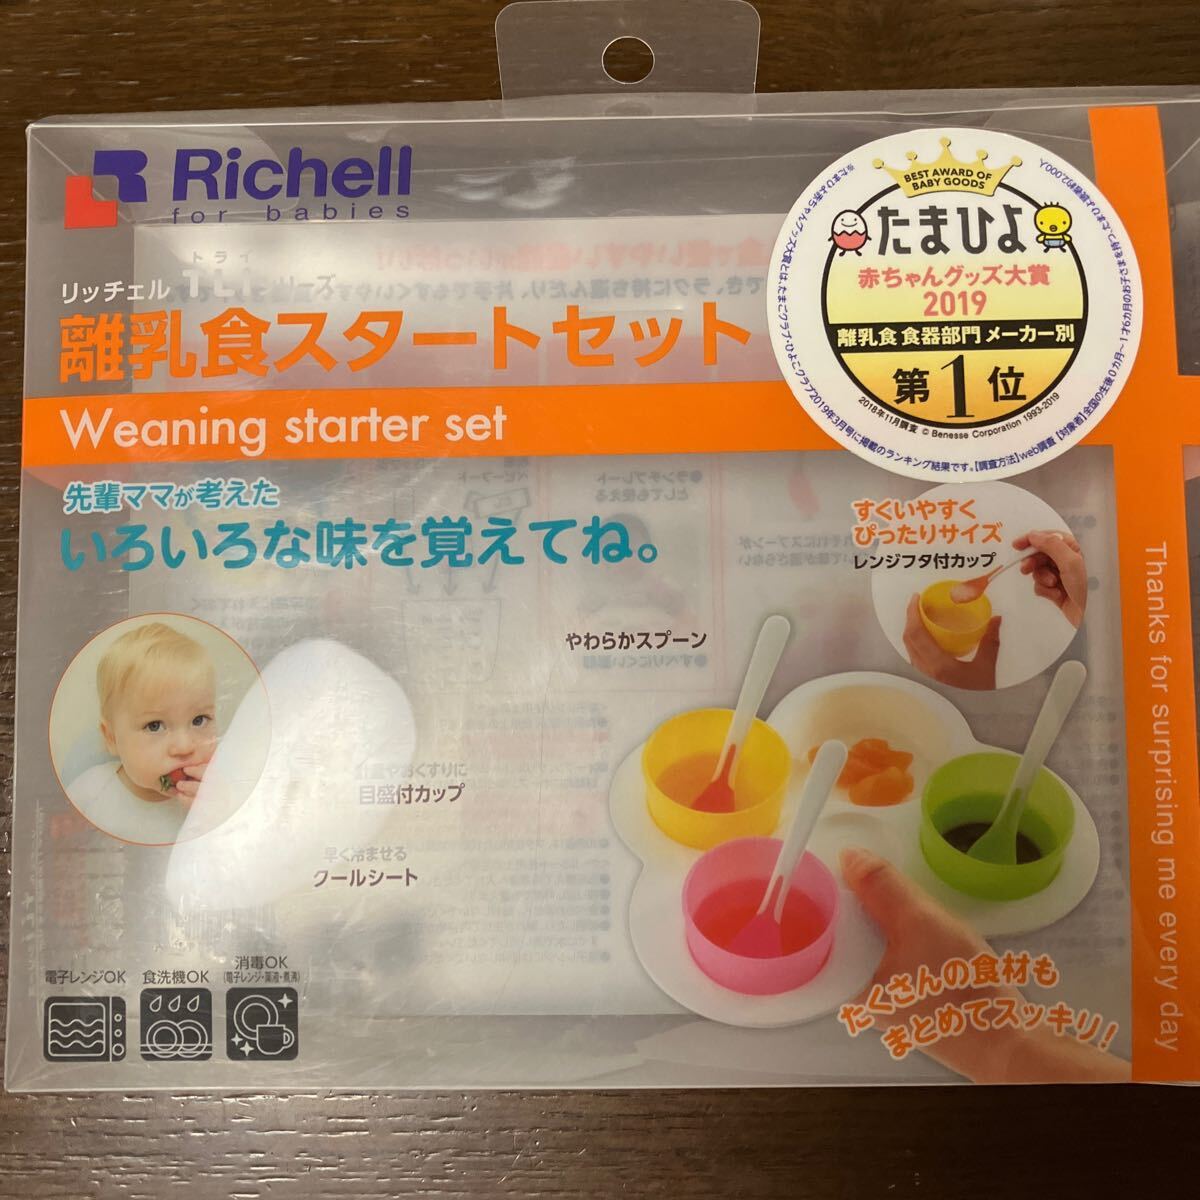  Ricci .ruTLI серии детская смесь старт комплект детская смесь plate только предотвращение скольжения имеется 